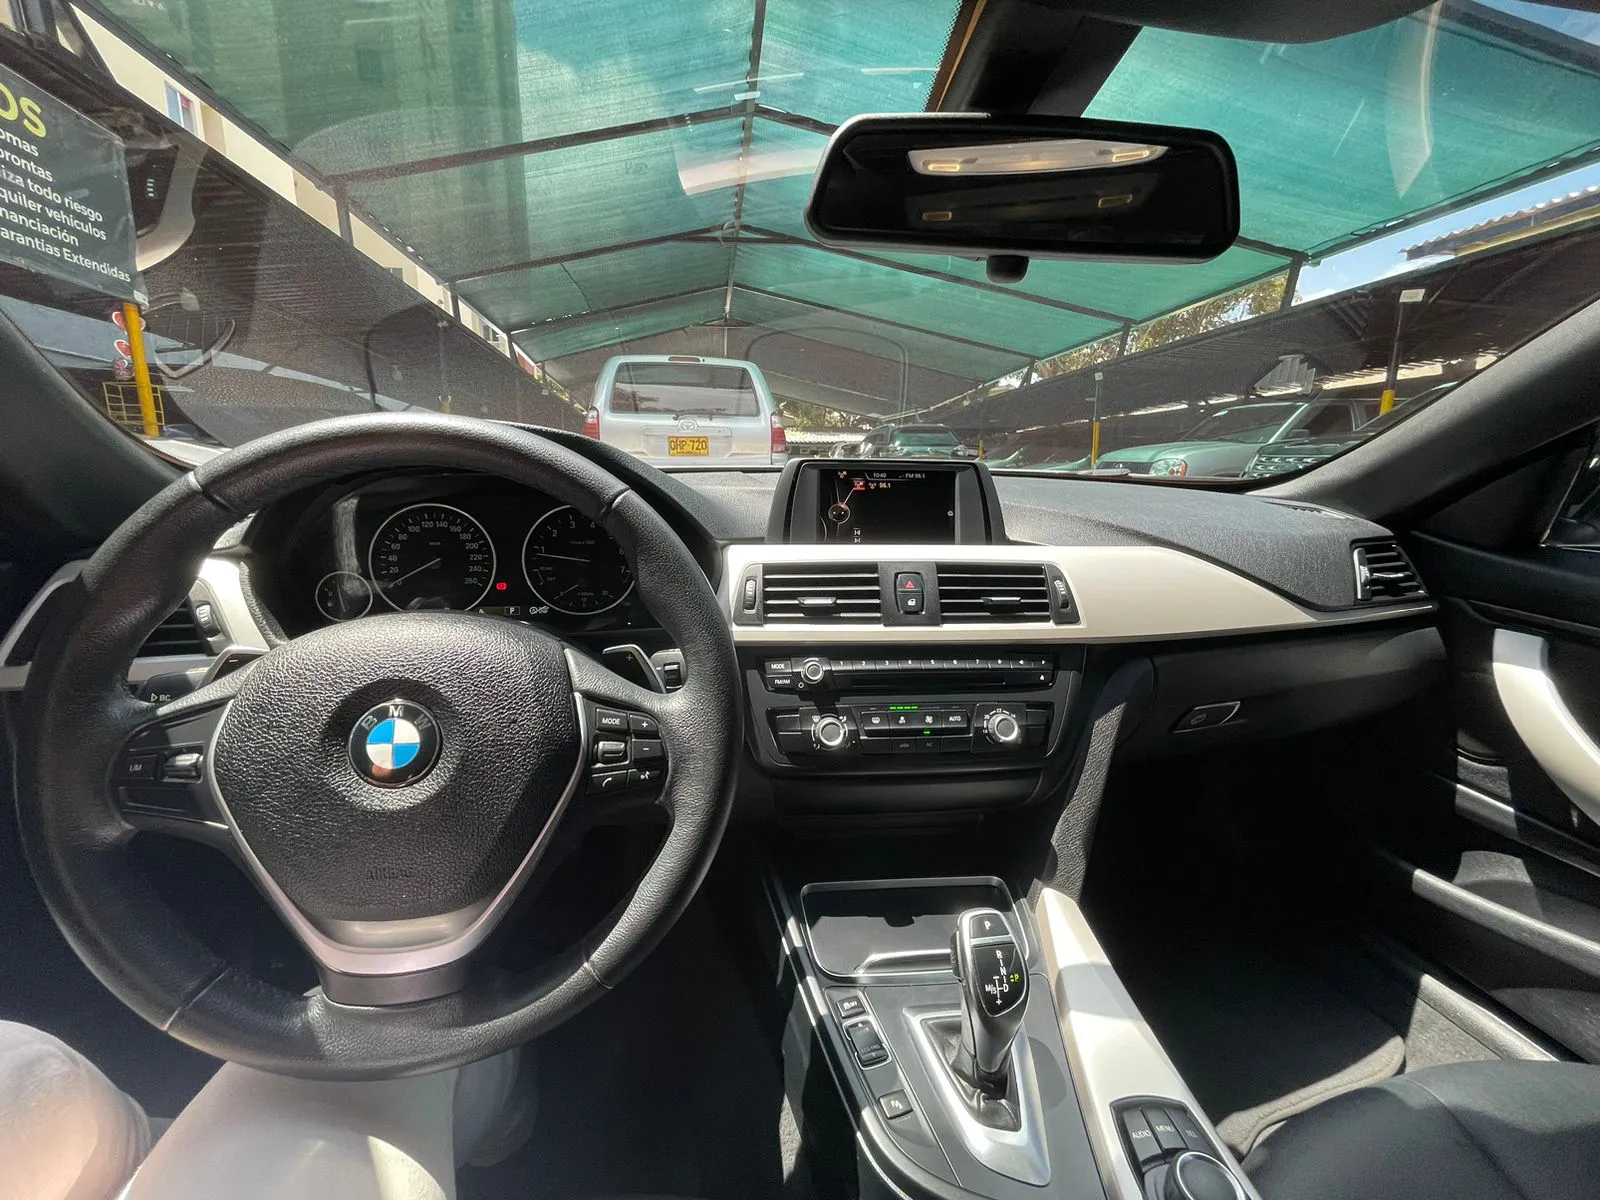 BMW CARROS 420i F33 Cabriolet Sportline 2016